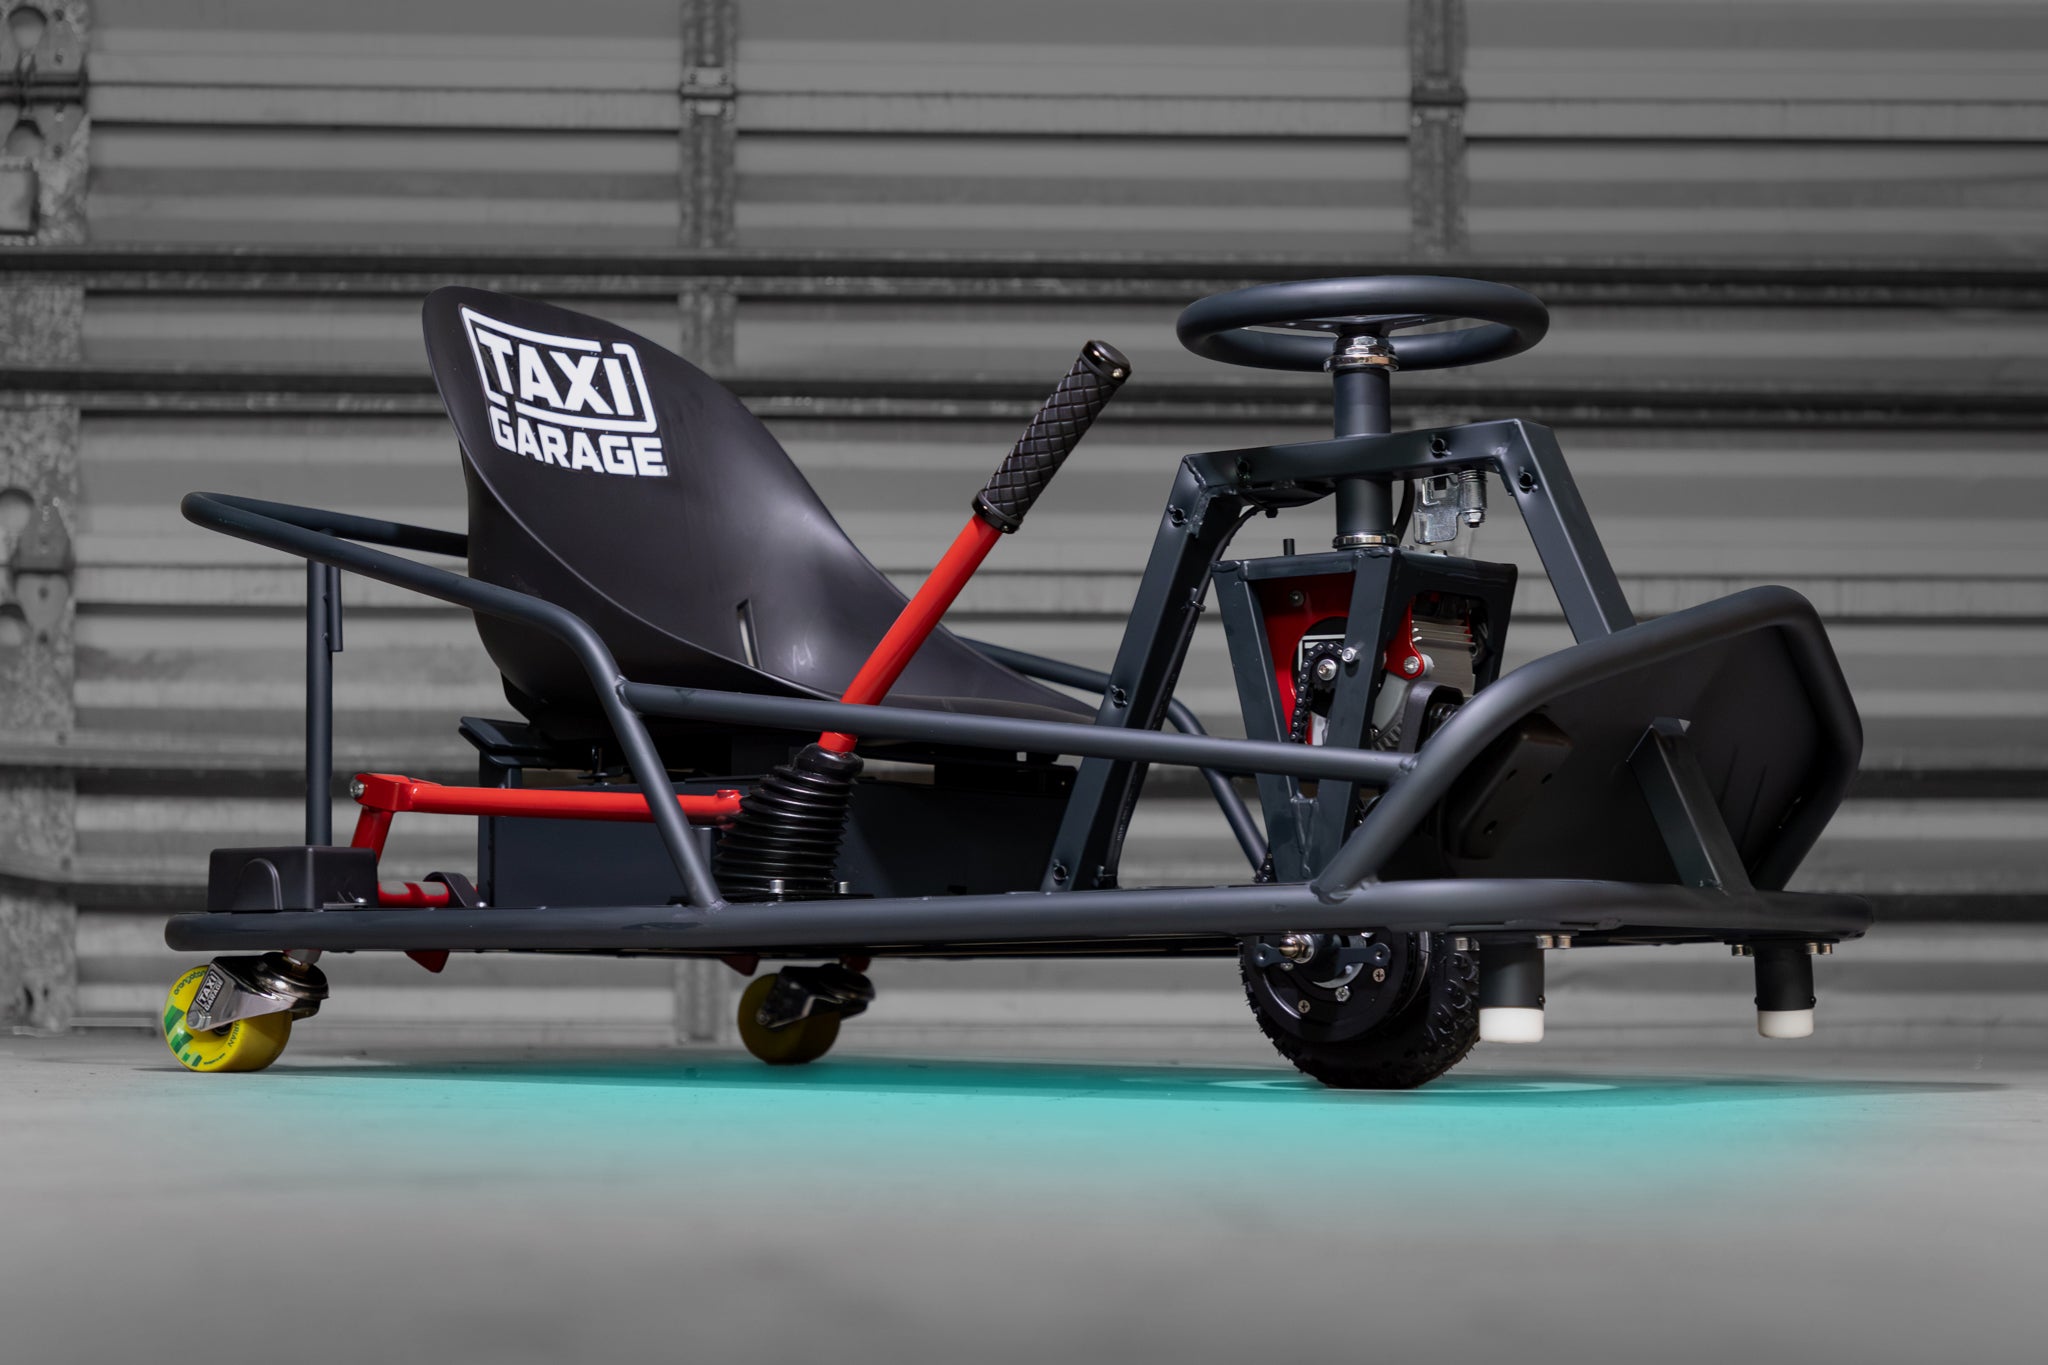 Get Driftin' With Razor's Crazy Cart